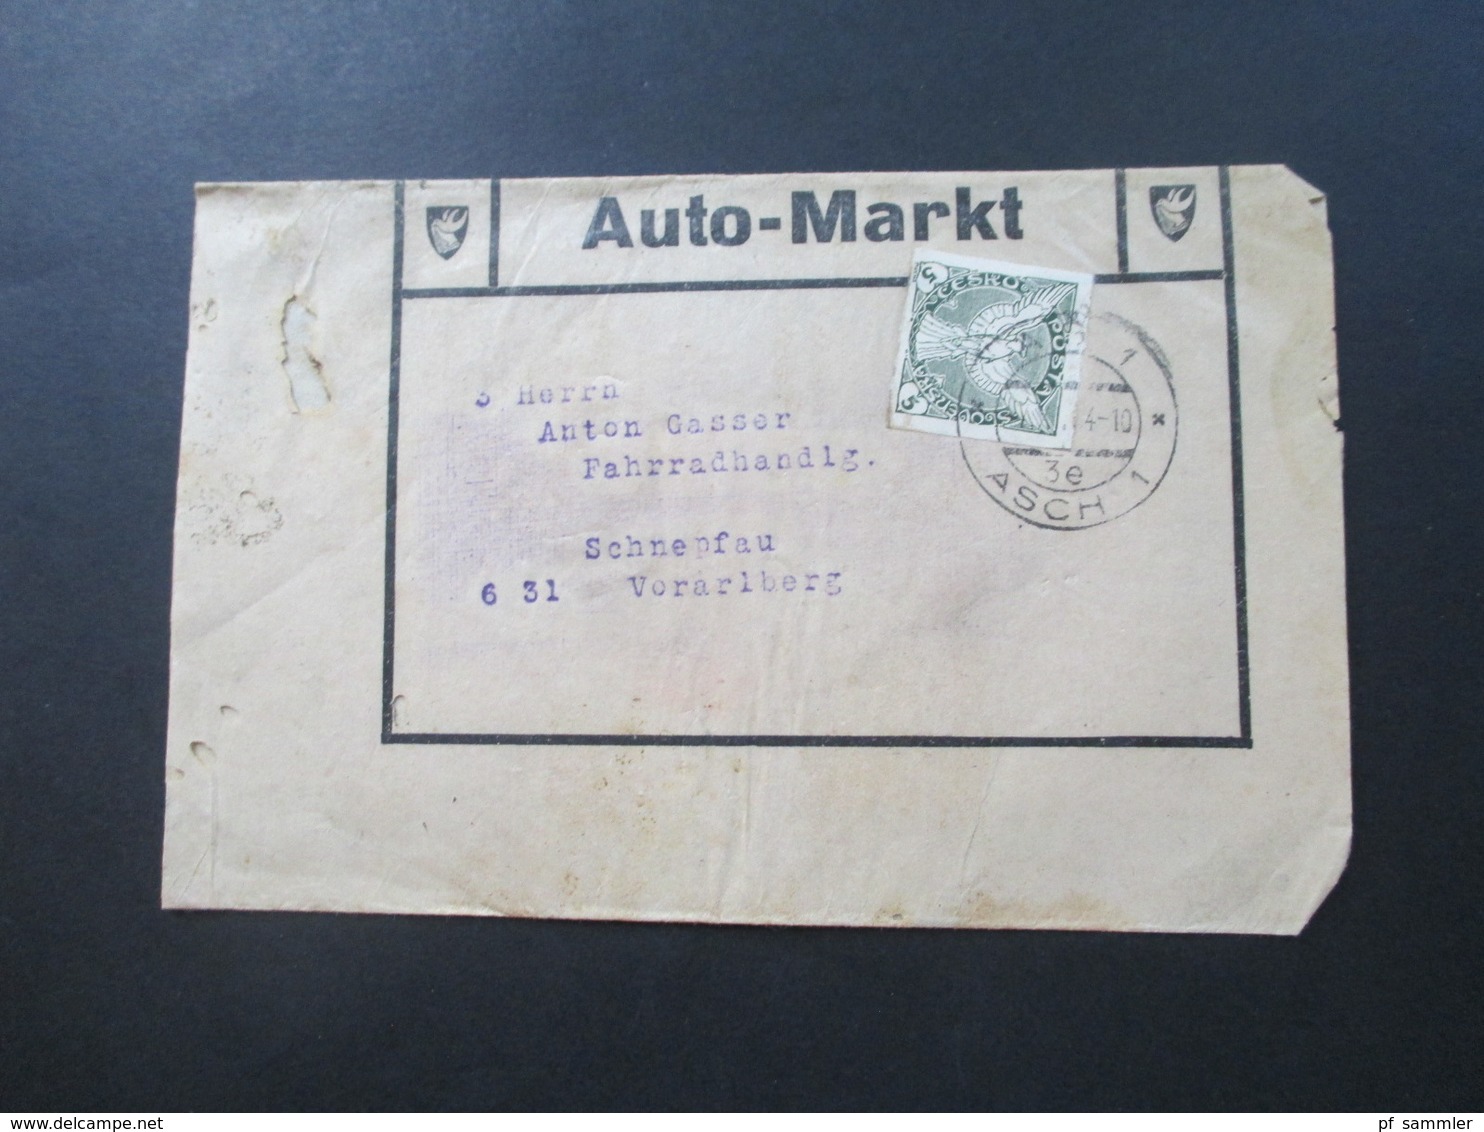 CSSR 1932 Streifbänder Auto Markt Gratisexemplar Stempel As 1 Asch (Sudetenland) nach Schnepfau Fahrradhandlung